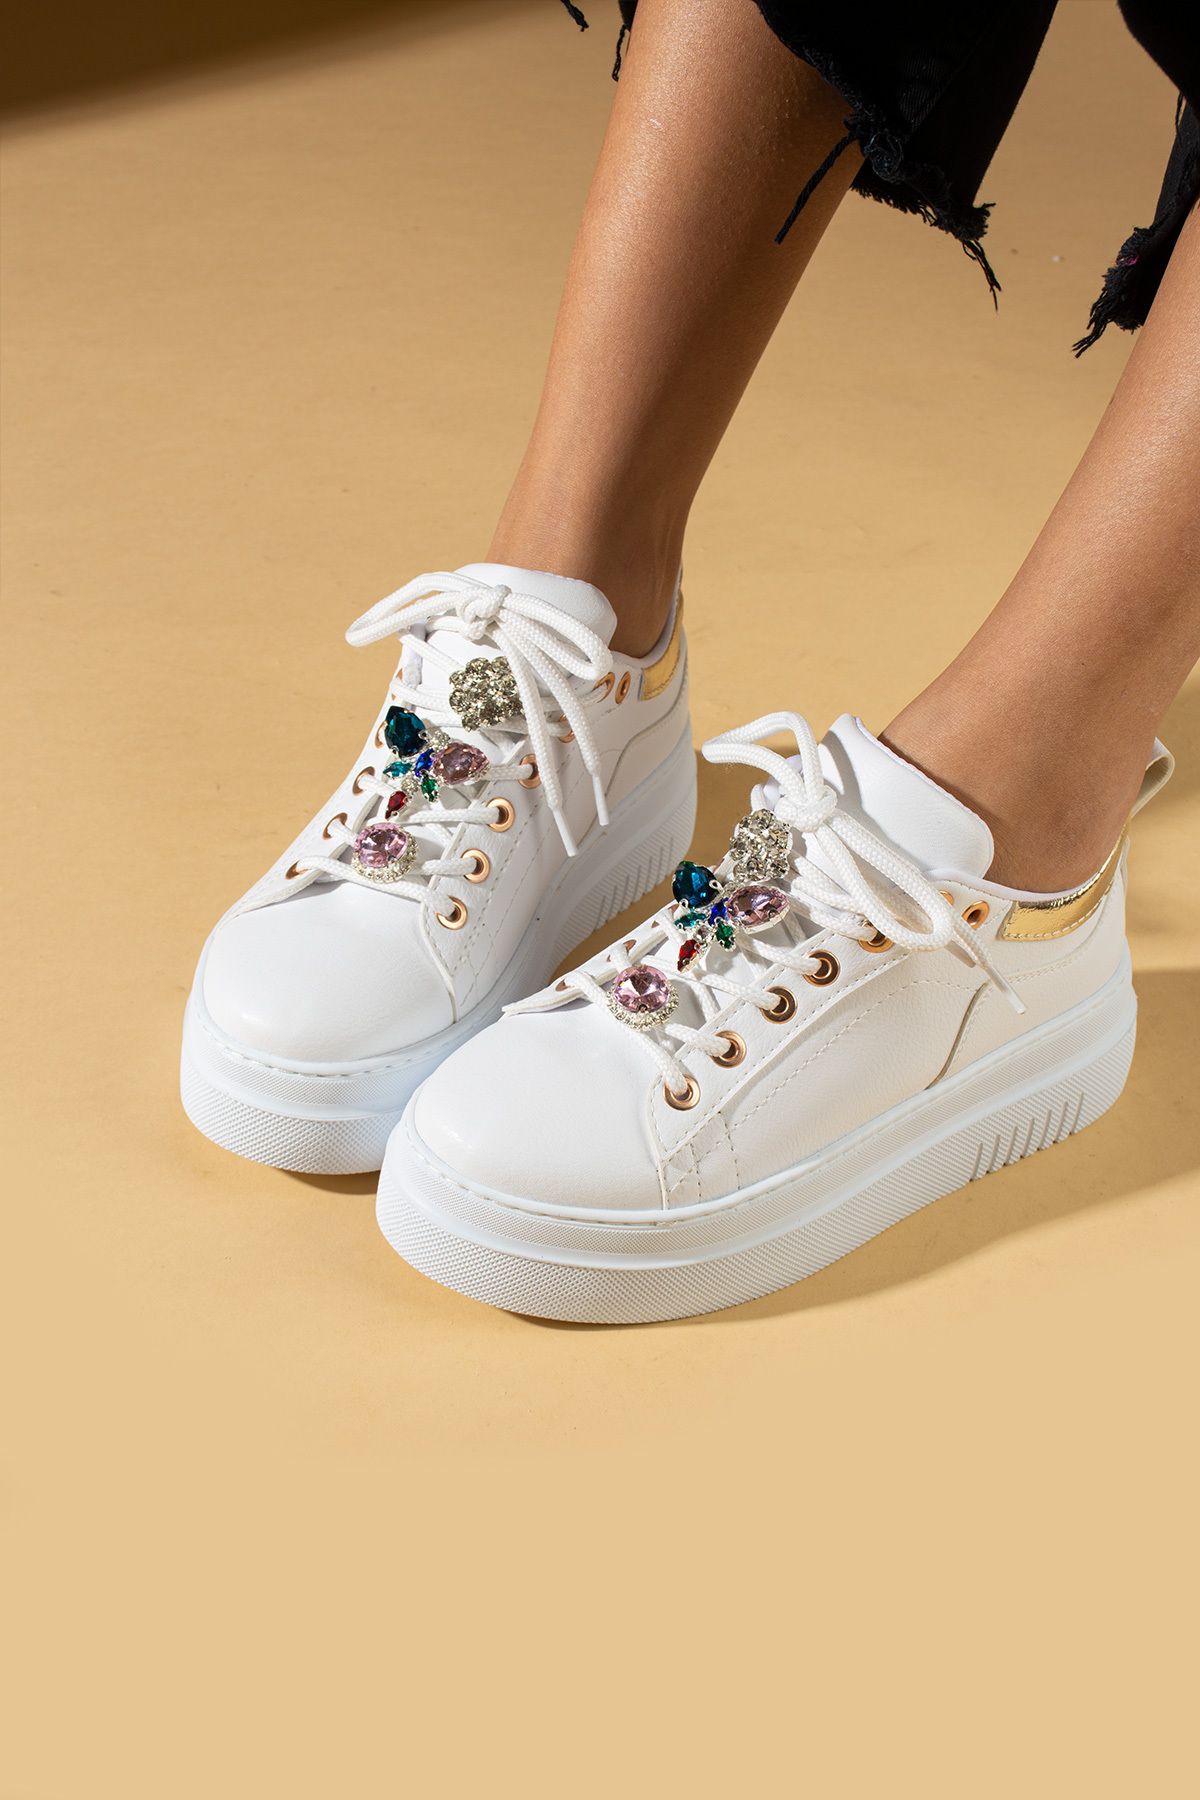 Pembe Potin Kadın Beyaz Poli Rahat Taban Taşlı Şık Tarz Bağcıklı Sneaker Ayakkabı